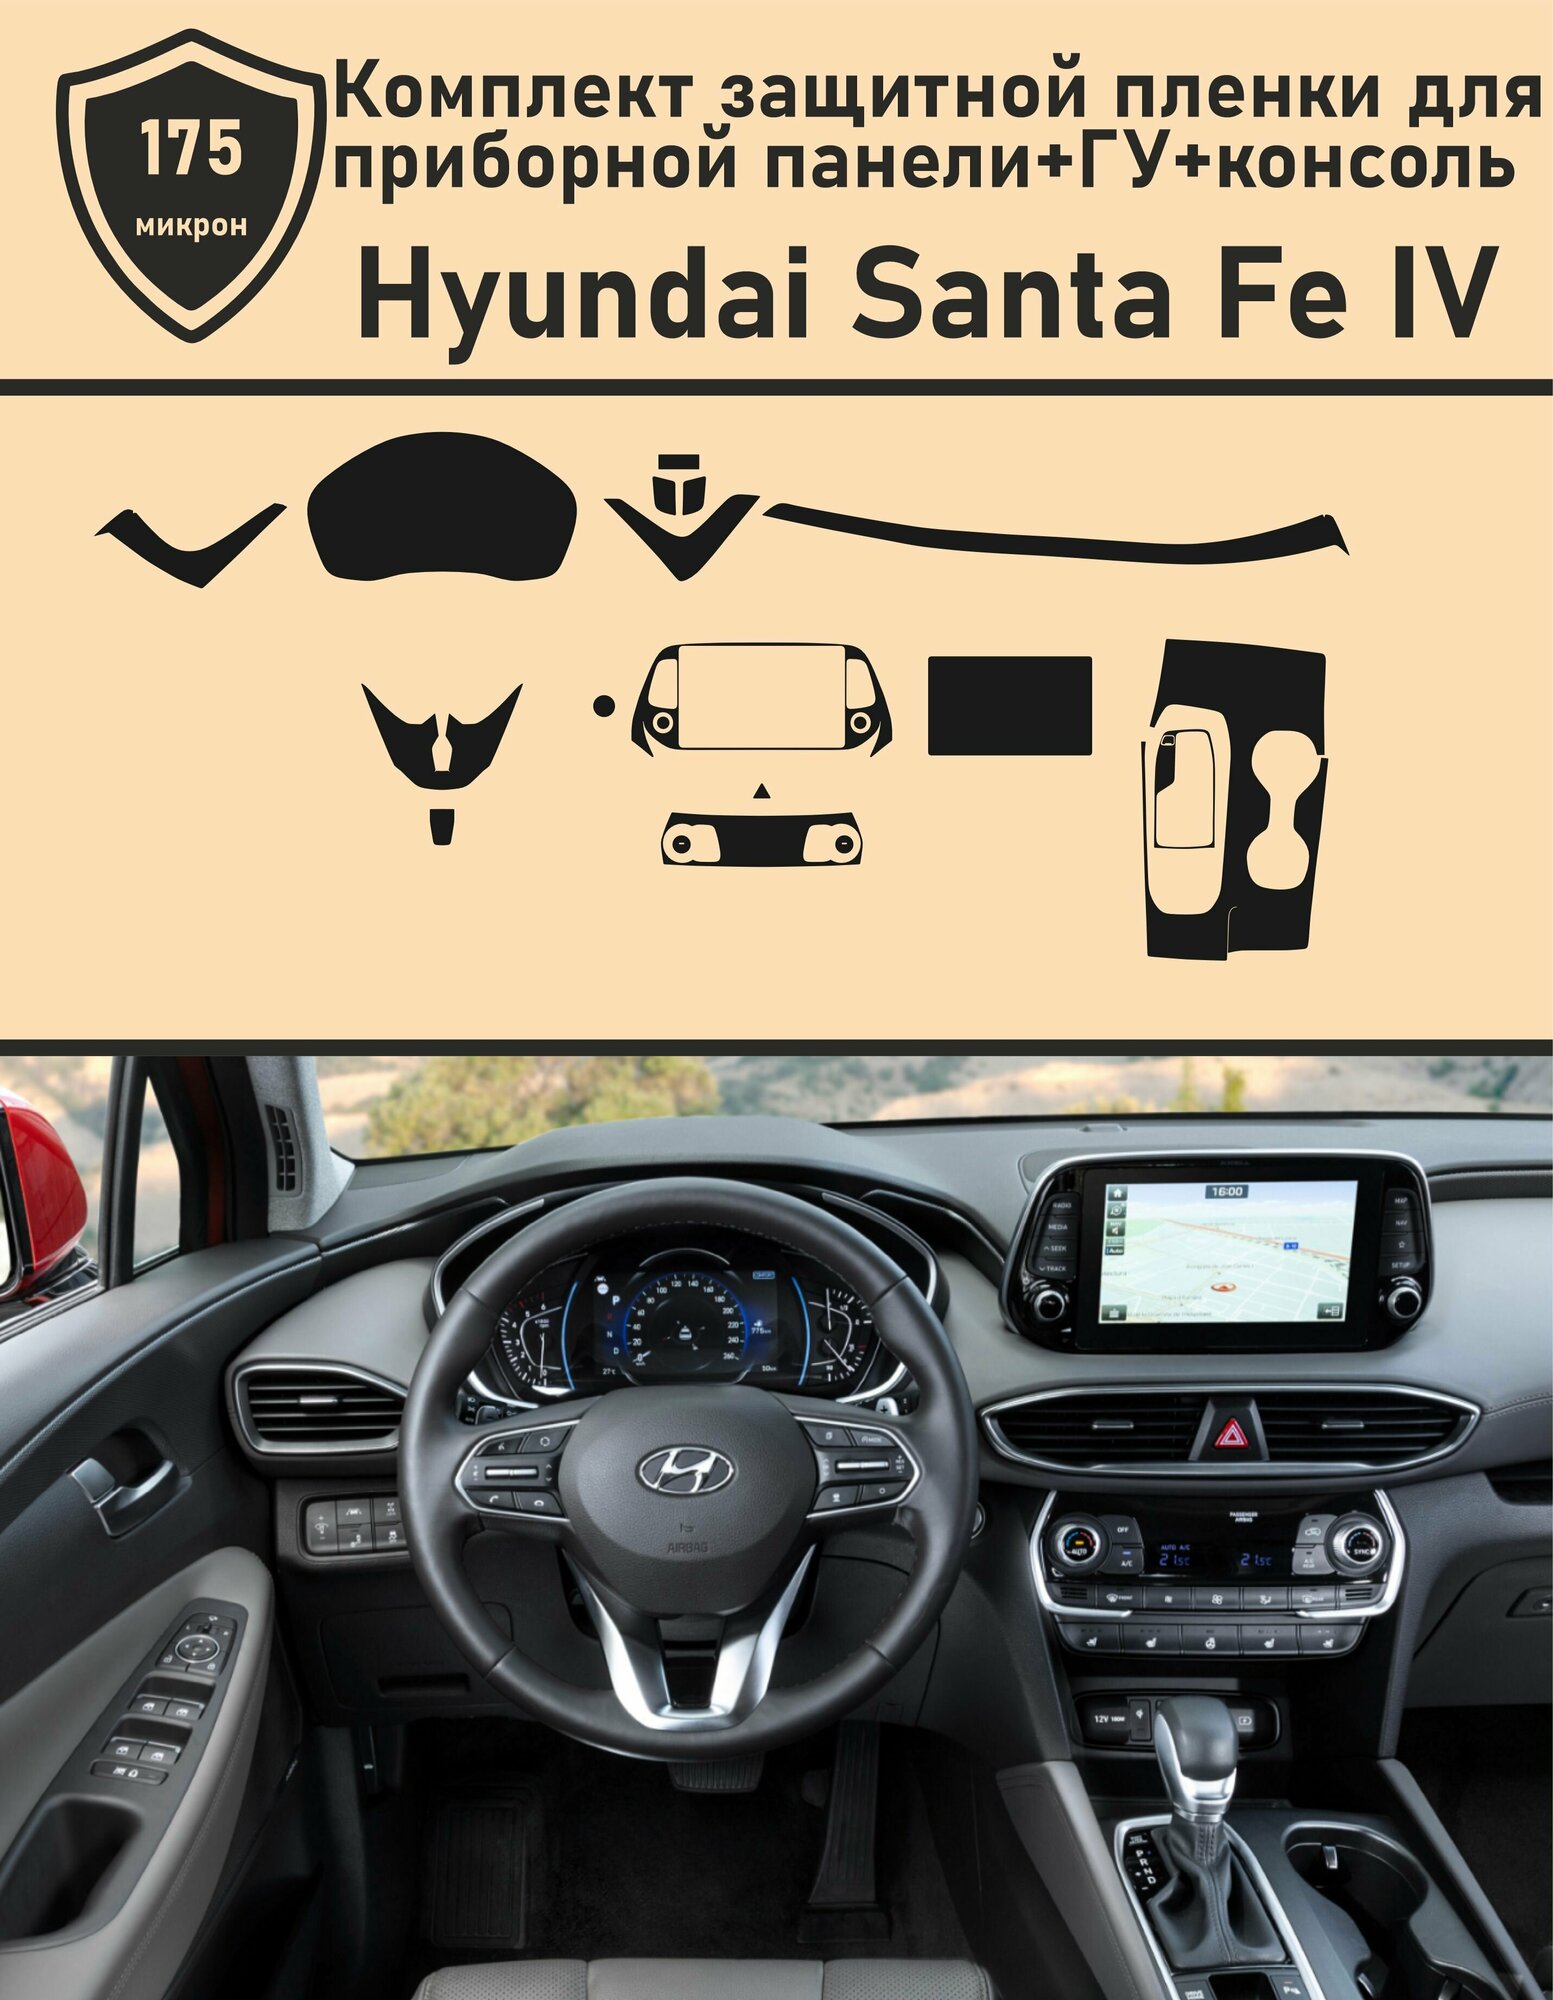 Hyundai Santa Fe IV 2018/Комплект защитной пленки для приборной панели+ГУ+консоль